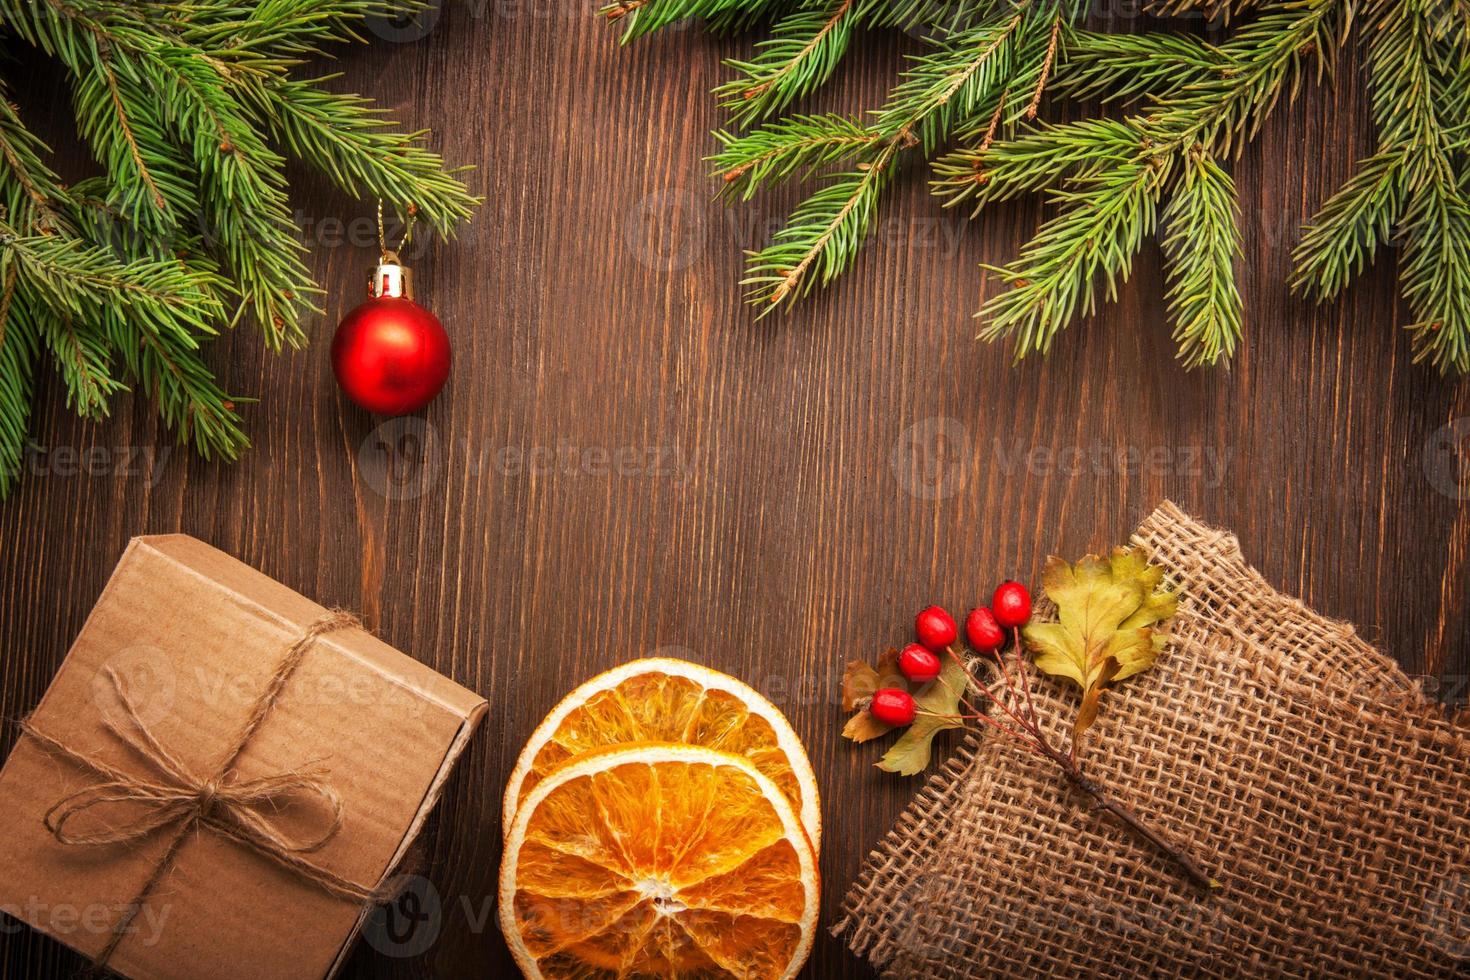 pan de jengibre árbol de navidad y regalos en la mesa foto